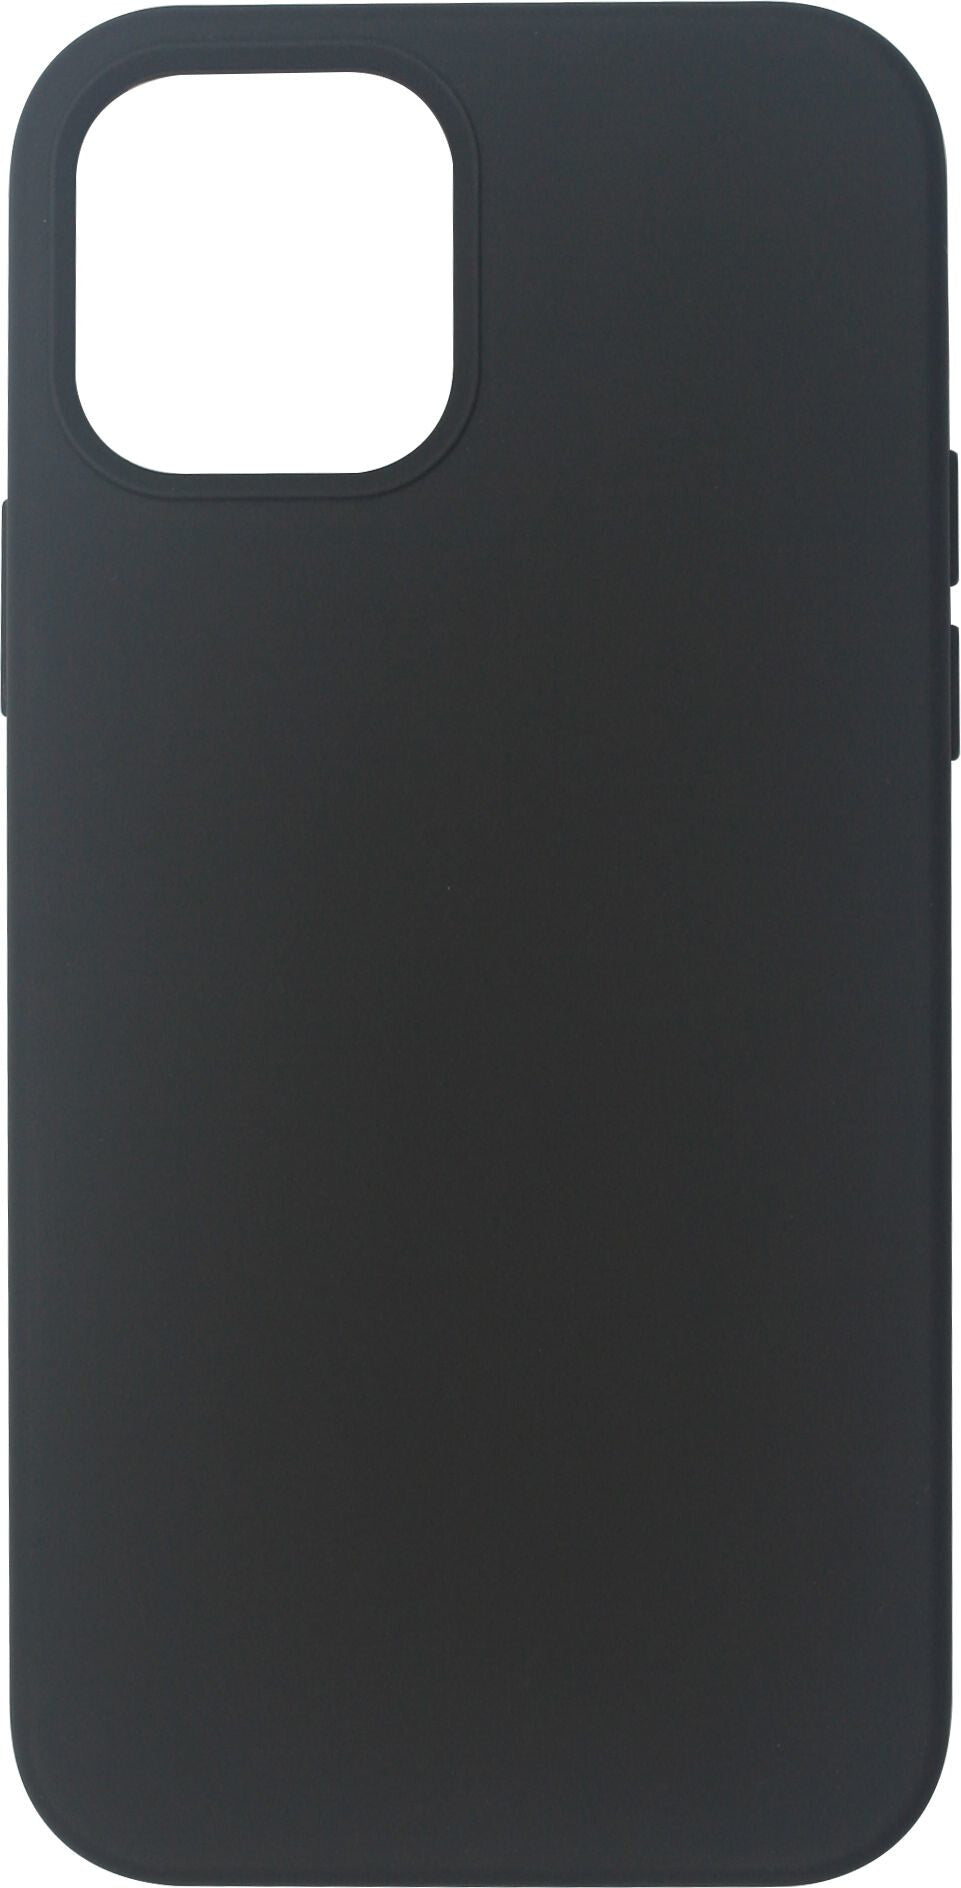 eSTUFF INFINITE RIGA mobile phone case for iPhone 12 / 12 Pro in Black